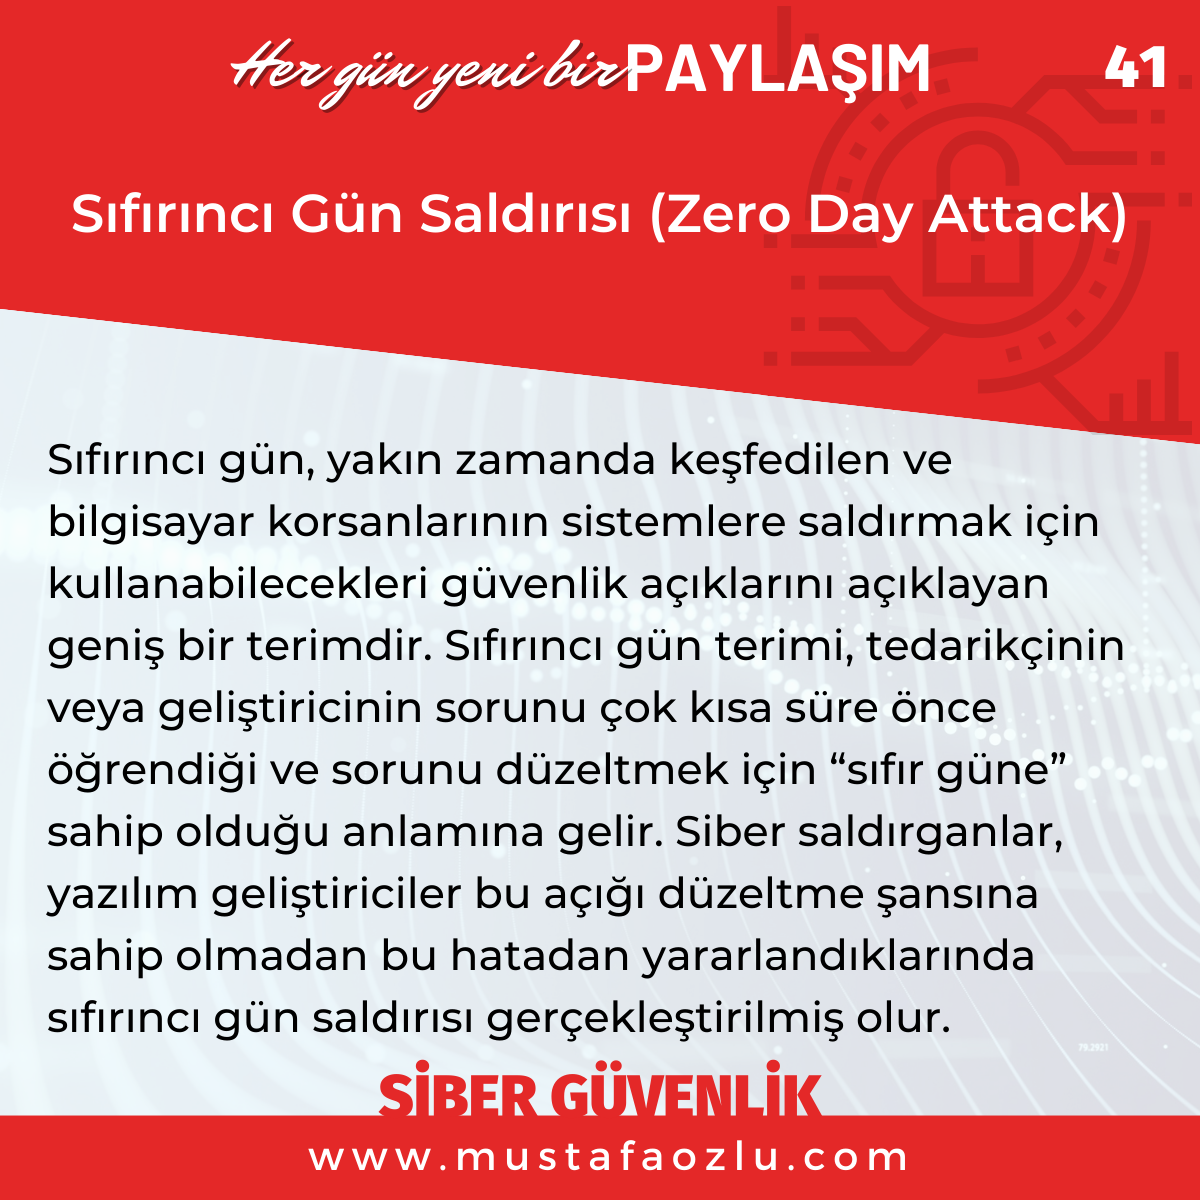 Sıfırıncı Gün Saldırısı (Zero Day Attack) - Mustafa ÖZLÜ